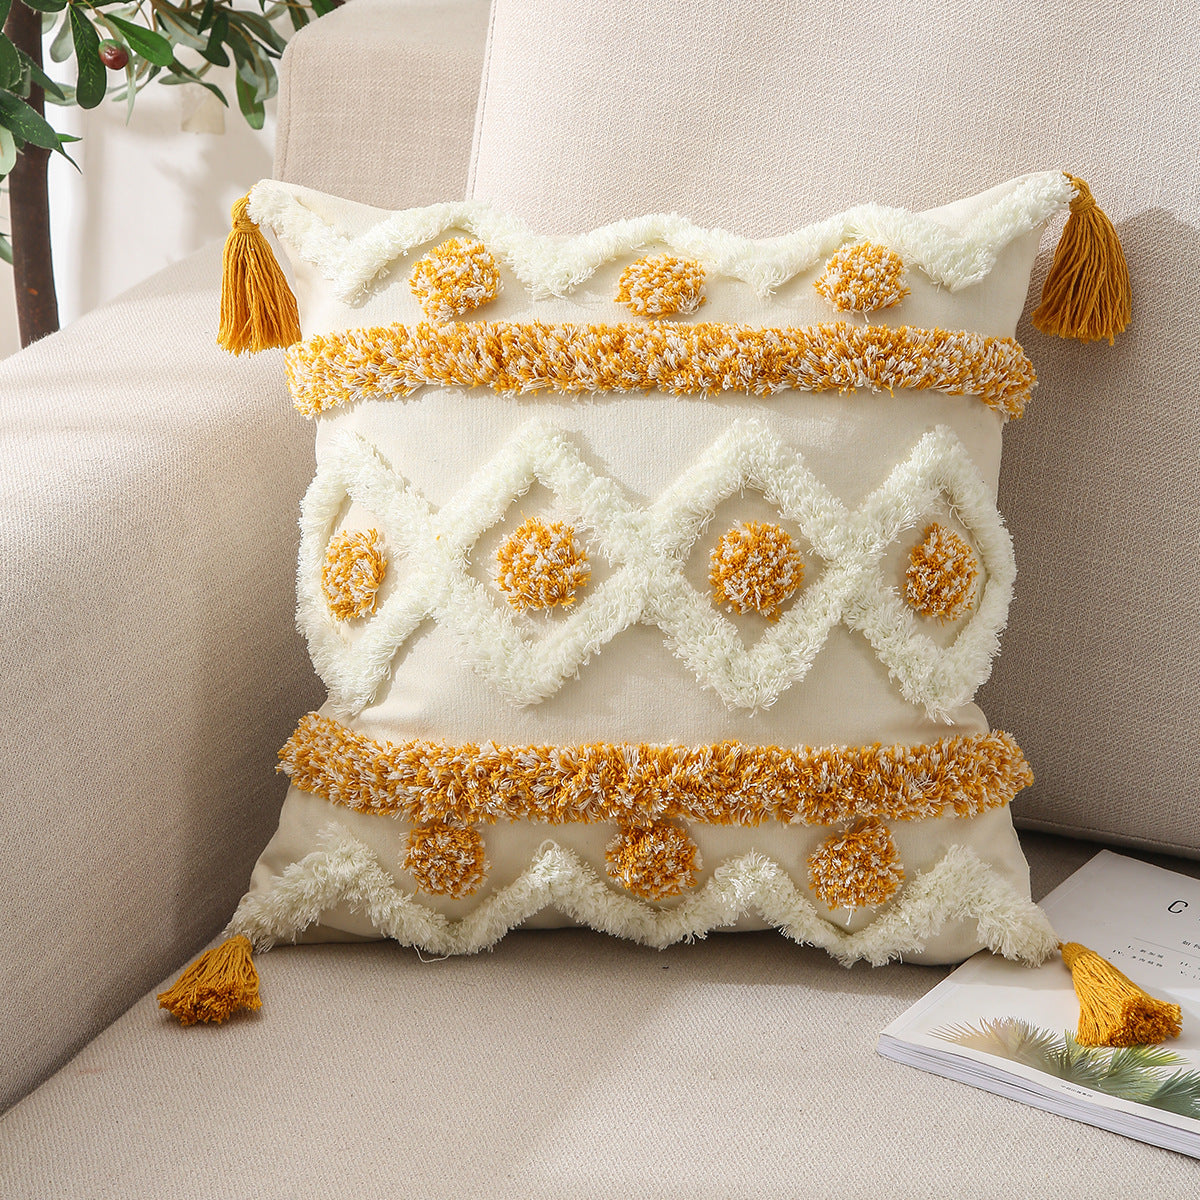 ALLURE Tufted Pillow Cover - Elevato Home White & Yellow Decor